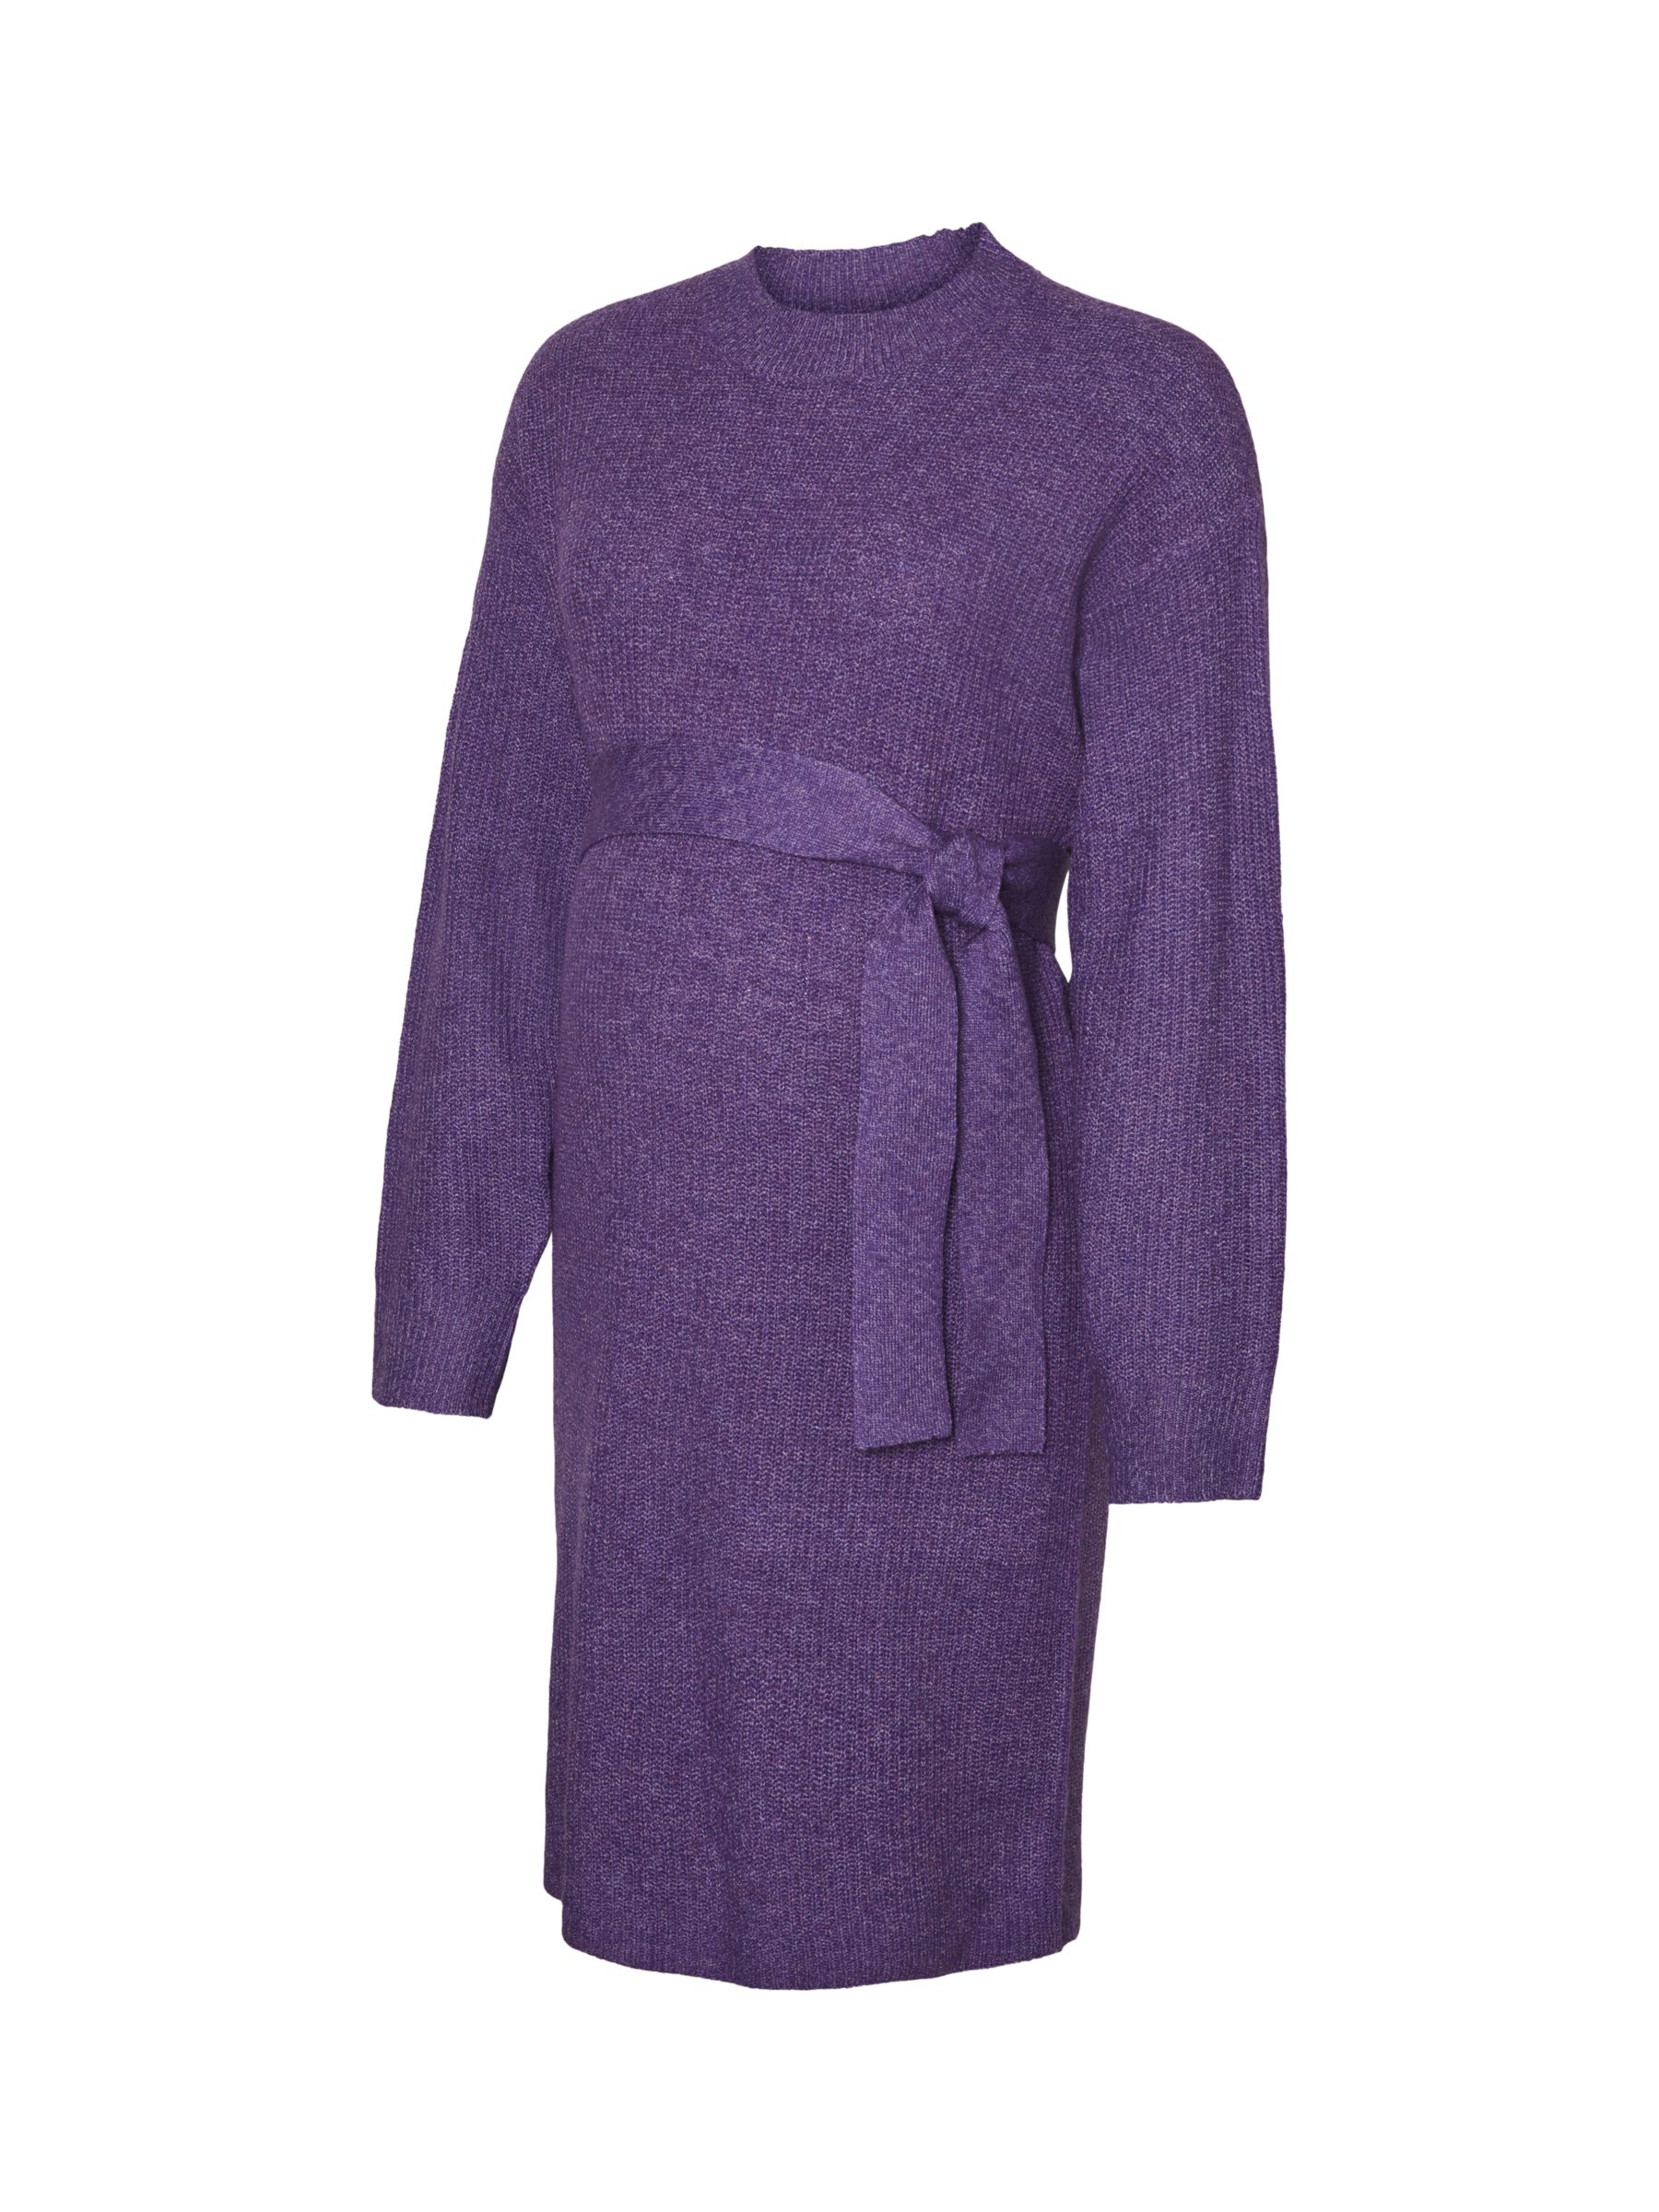 Mamalicious Svala Plain Knit Maternity Dress, Purple Melange, M